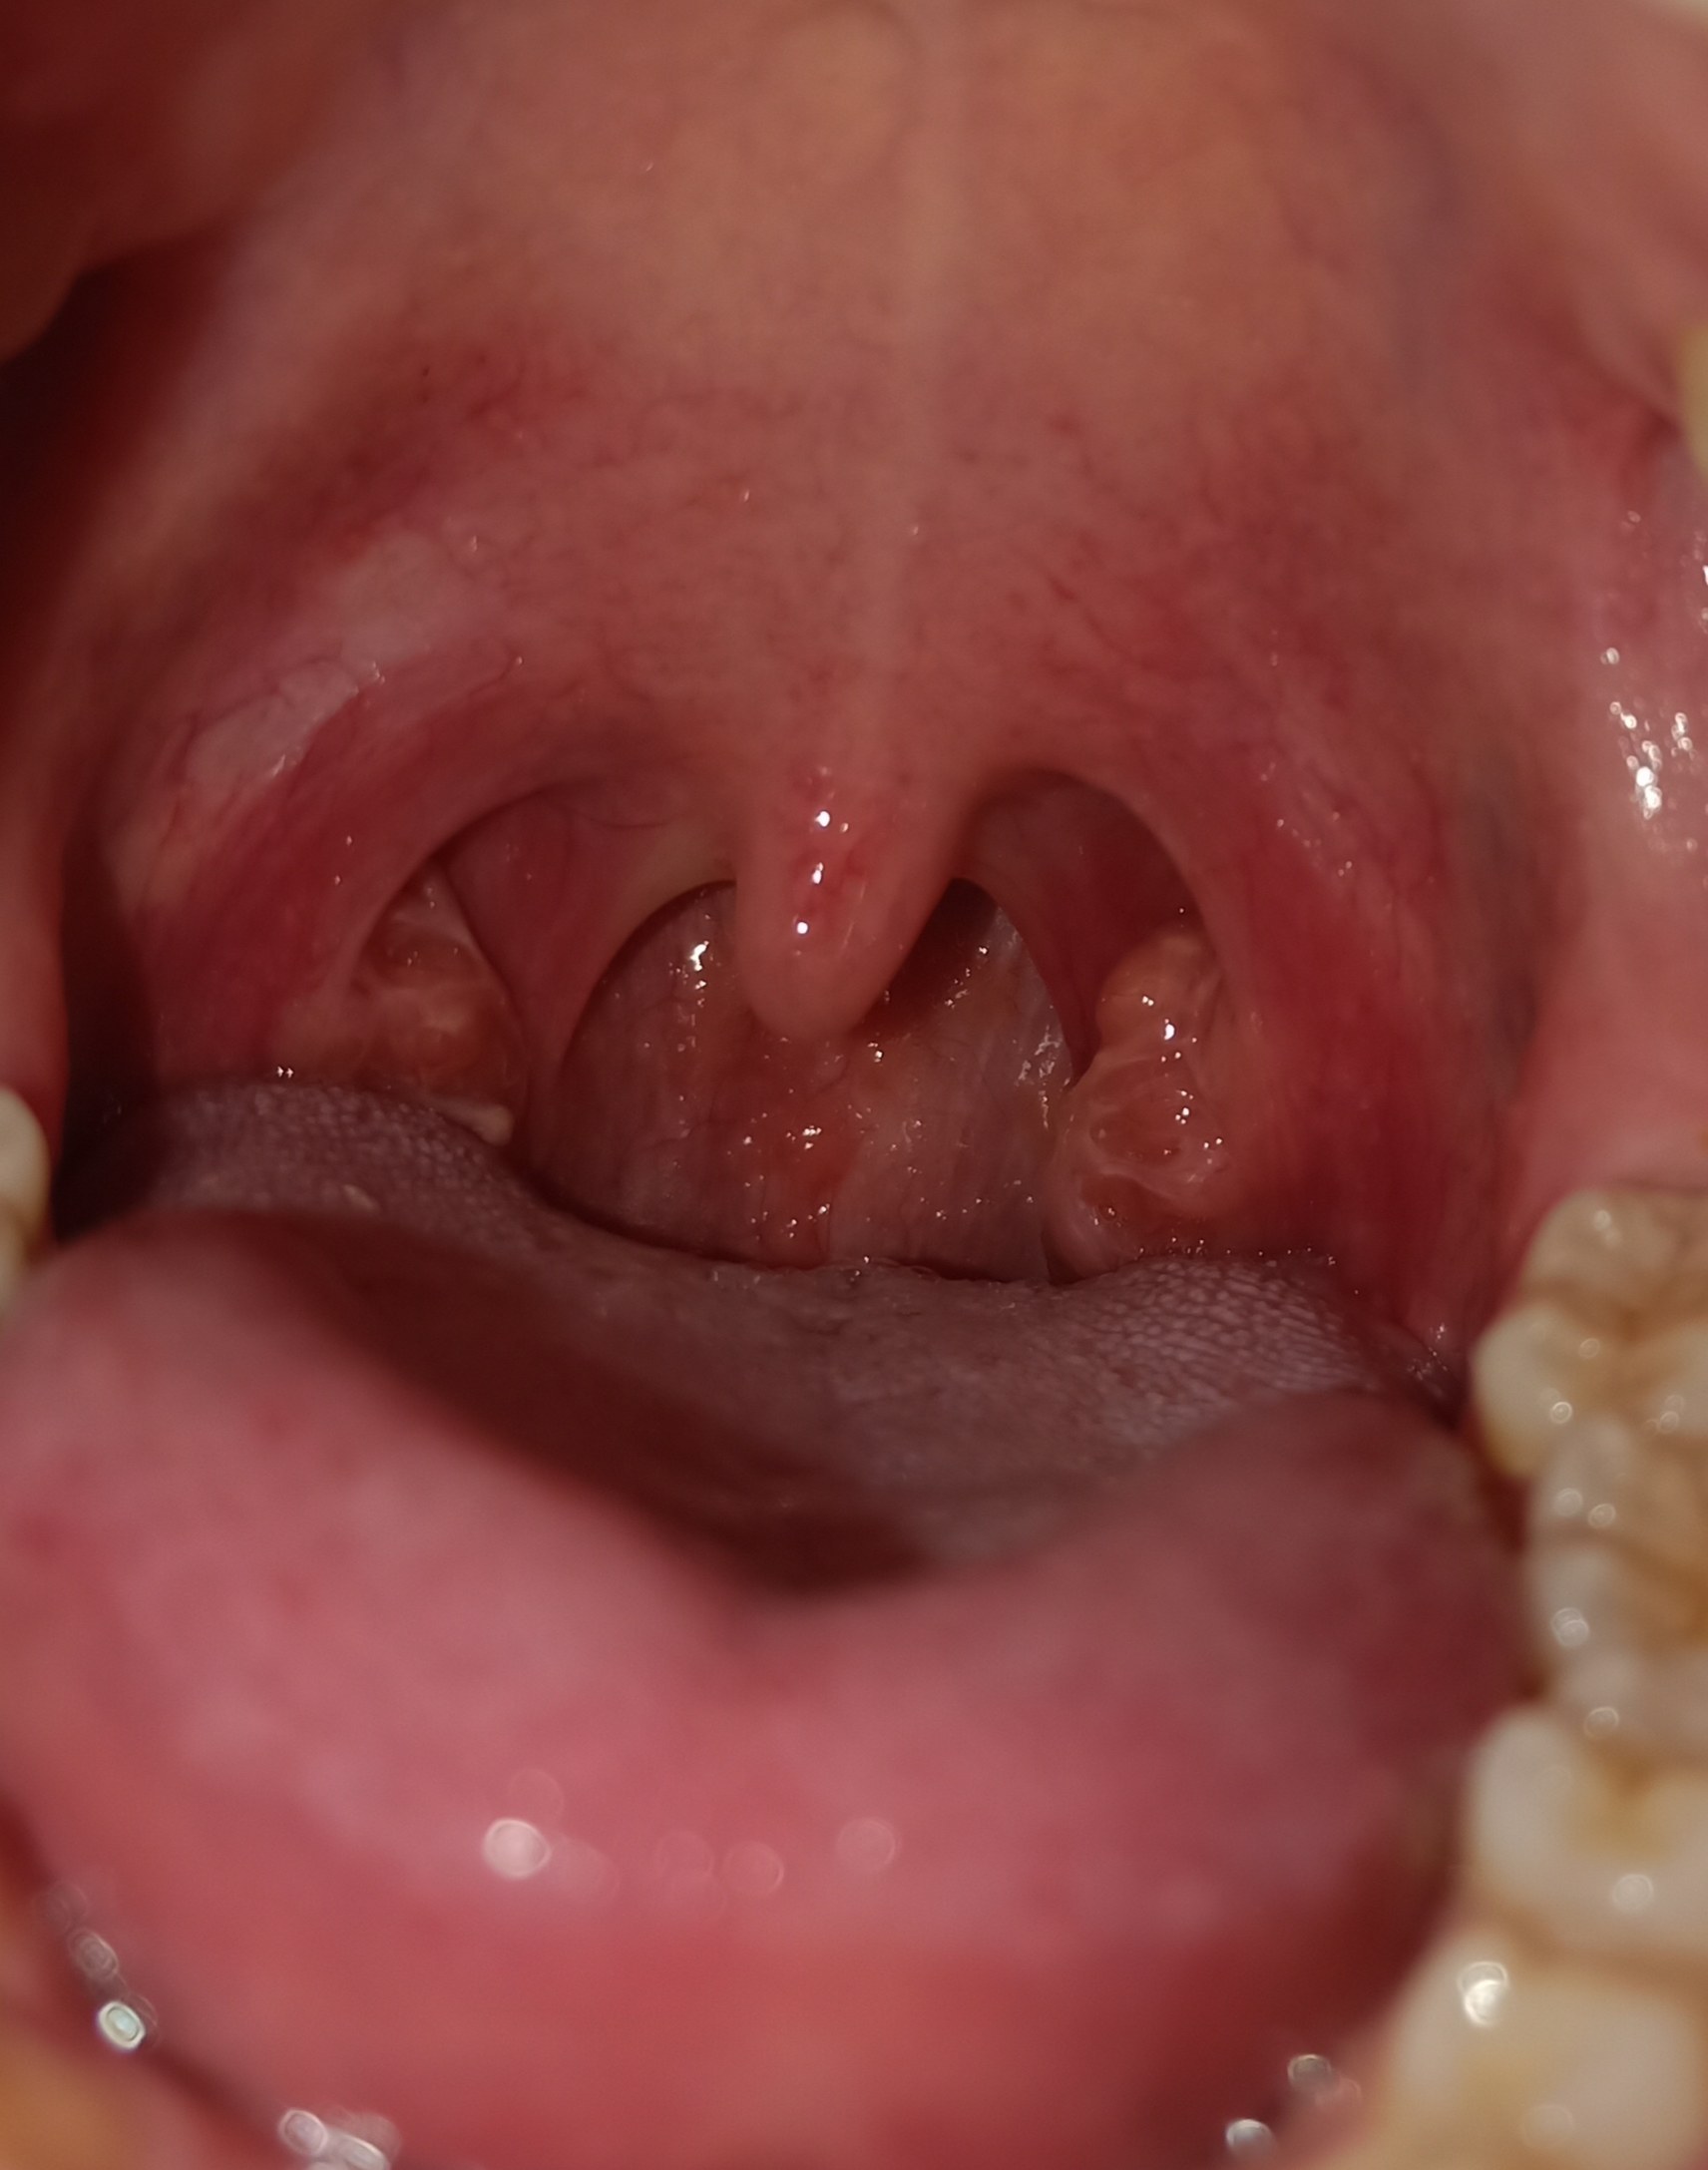 健康喉咙内部图片图片